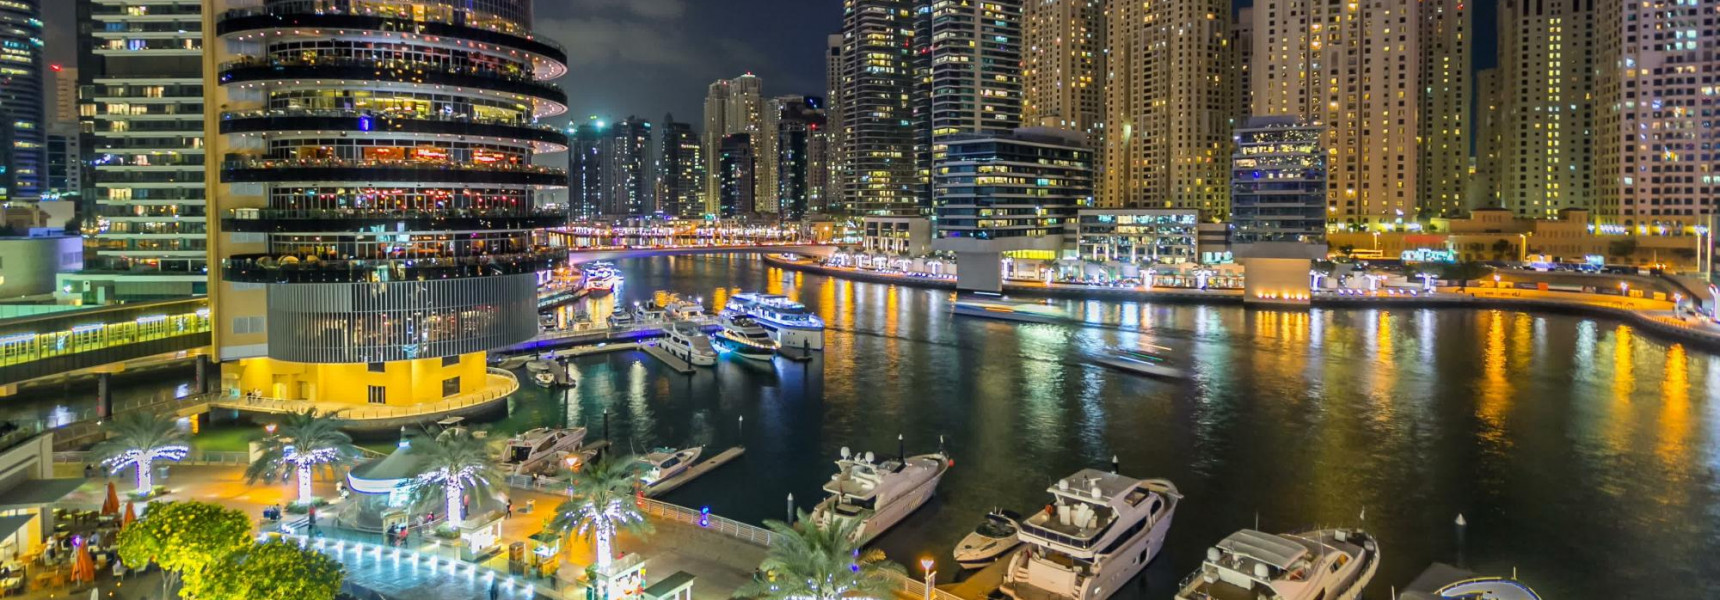 Luxury Restaurant Experiences in Dubai